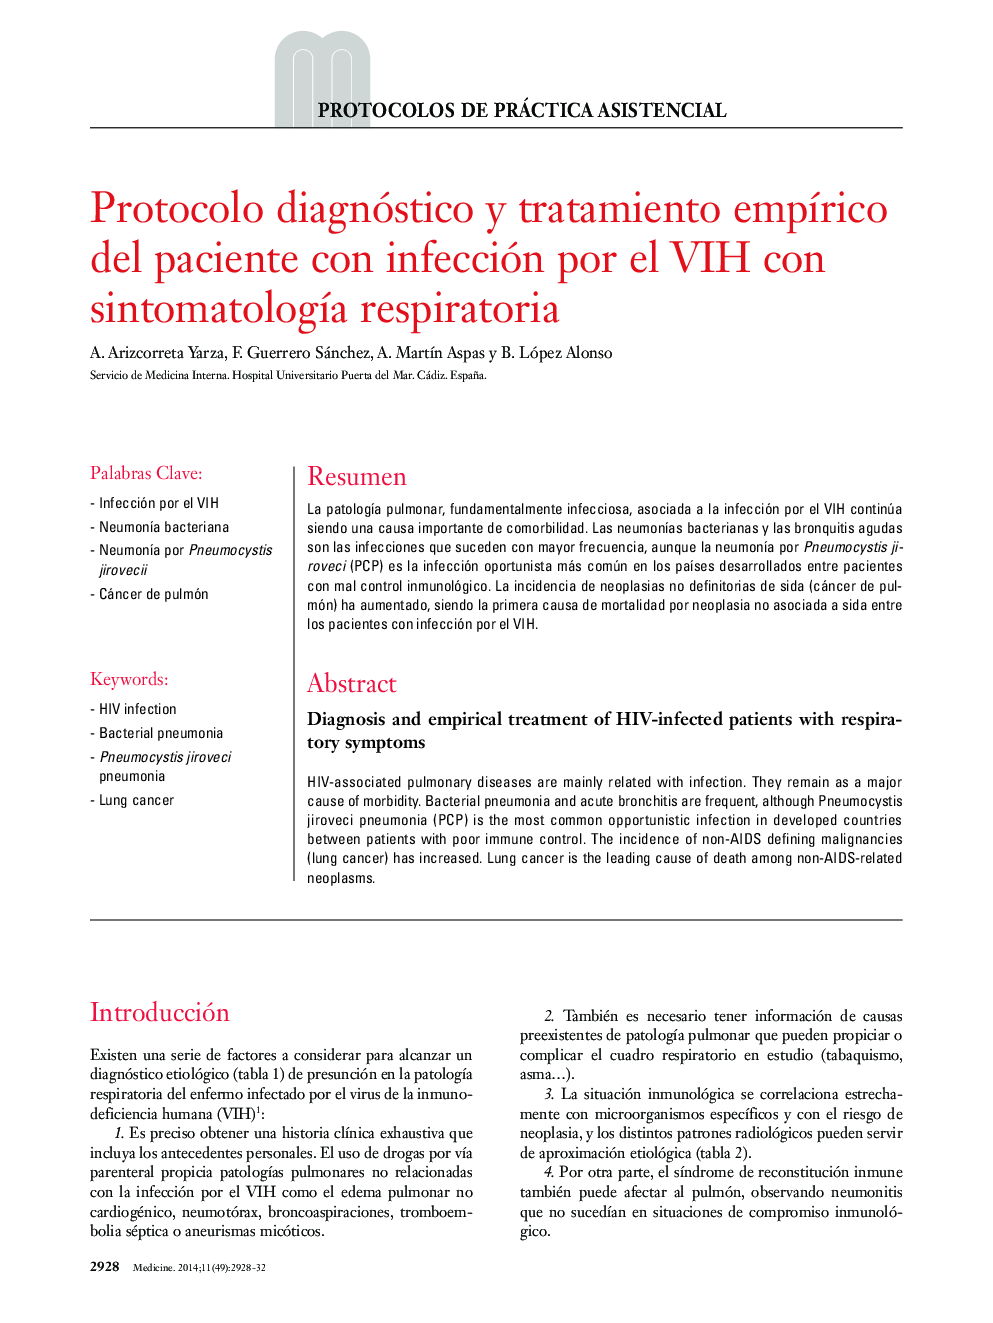 Protocolo diagnóstico y tratamiento empírico del paciente con infección por el VIH con sintomatología respiratoria